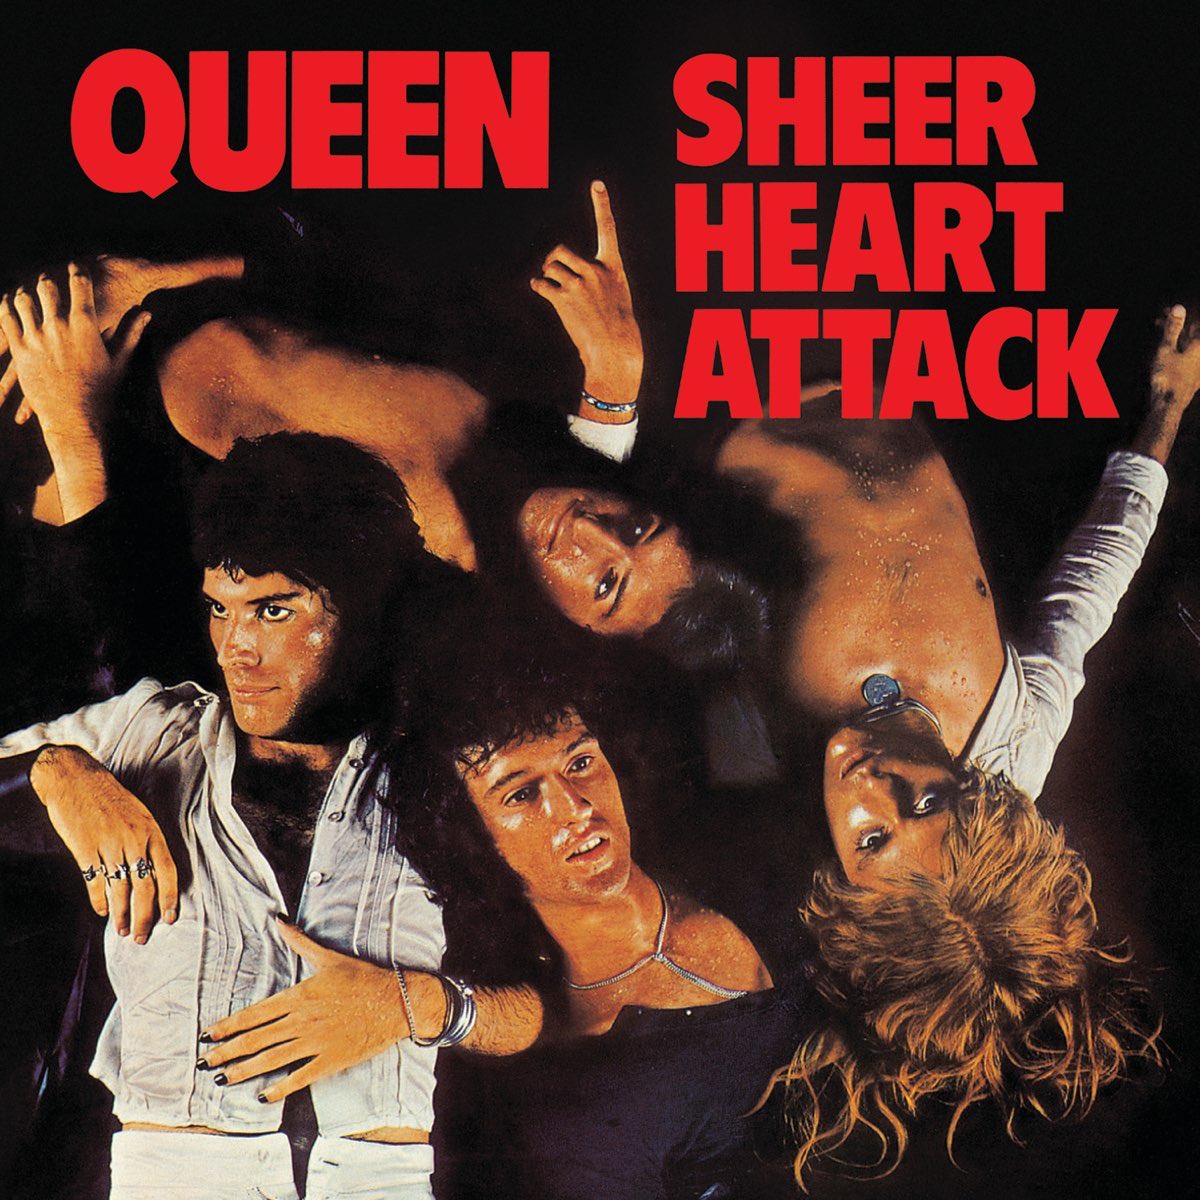 Queen - Sheer Heart Attack ♫ #AlbumOfTheWeek #KillerQueen #Queen #1974